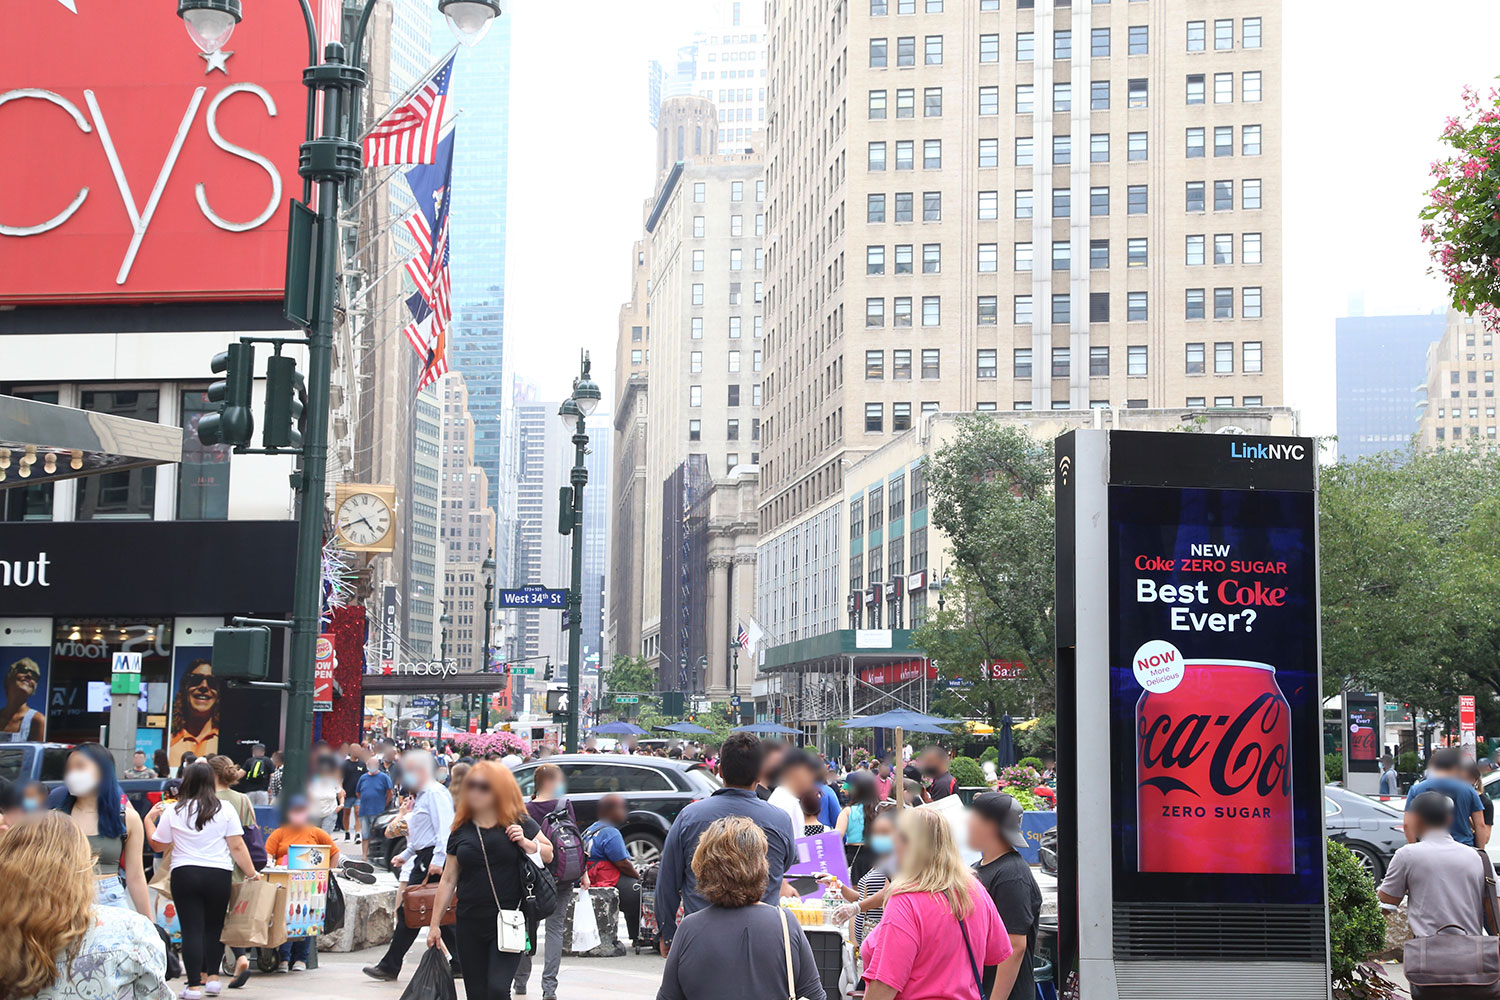 New Coca-Cola Zero Sugar "Best Coke Ever?" promotional ad in Times Square